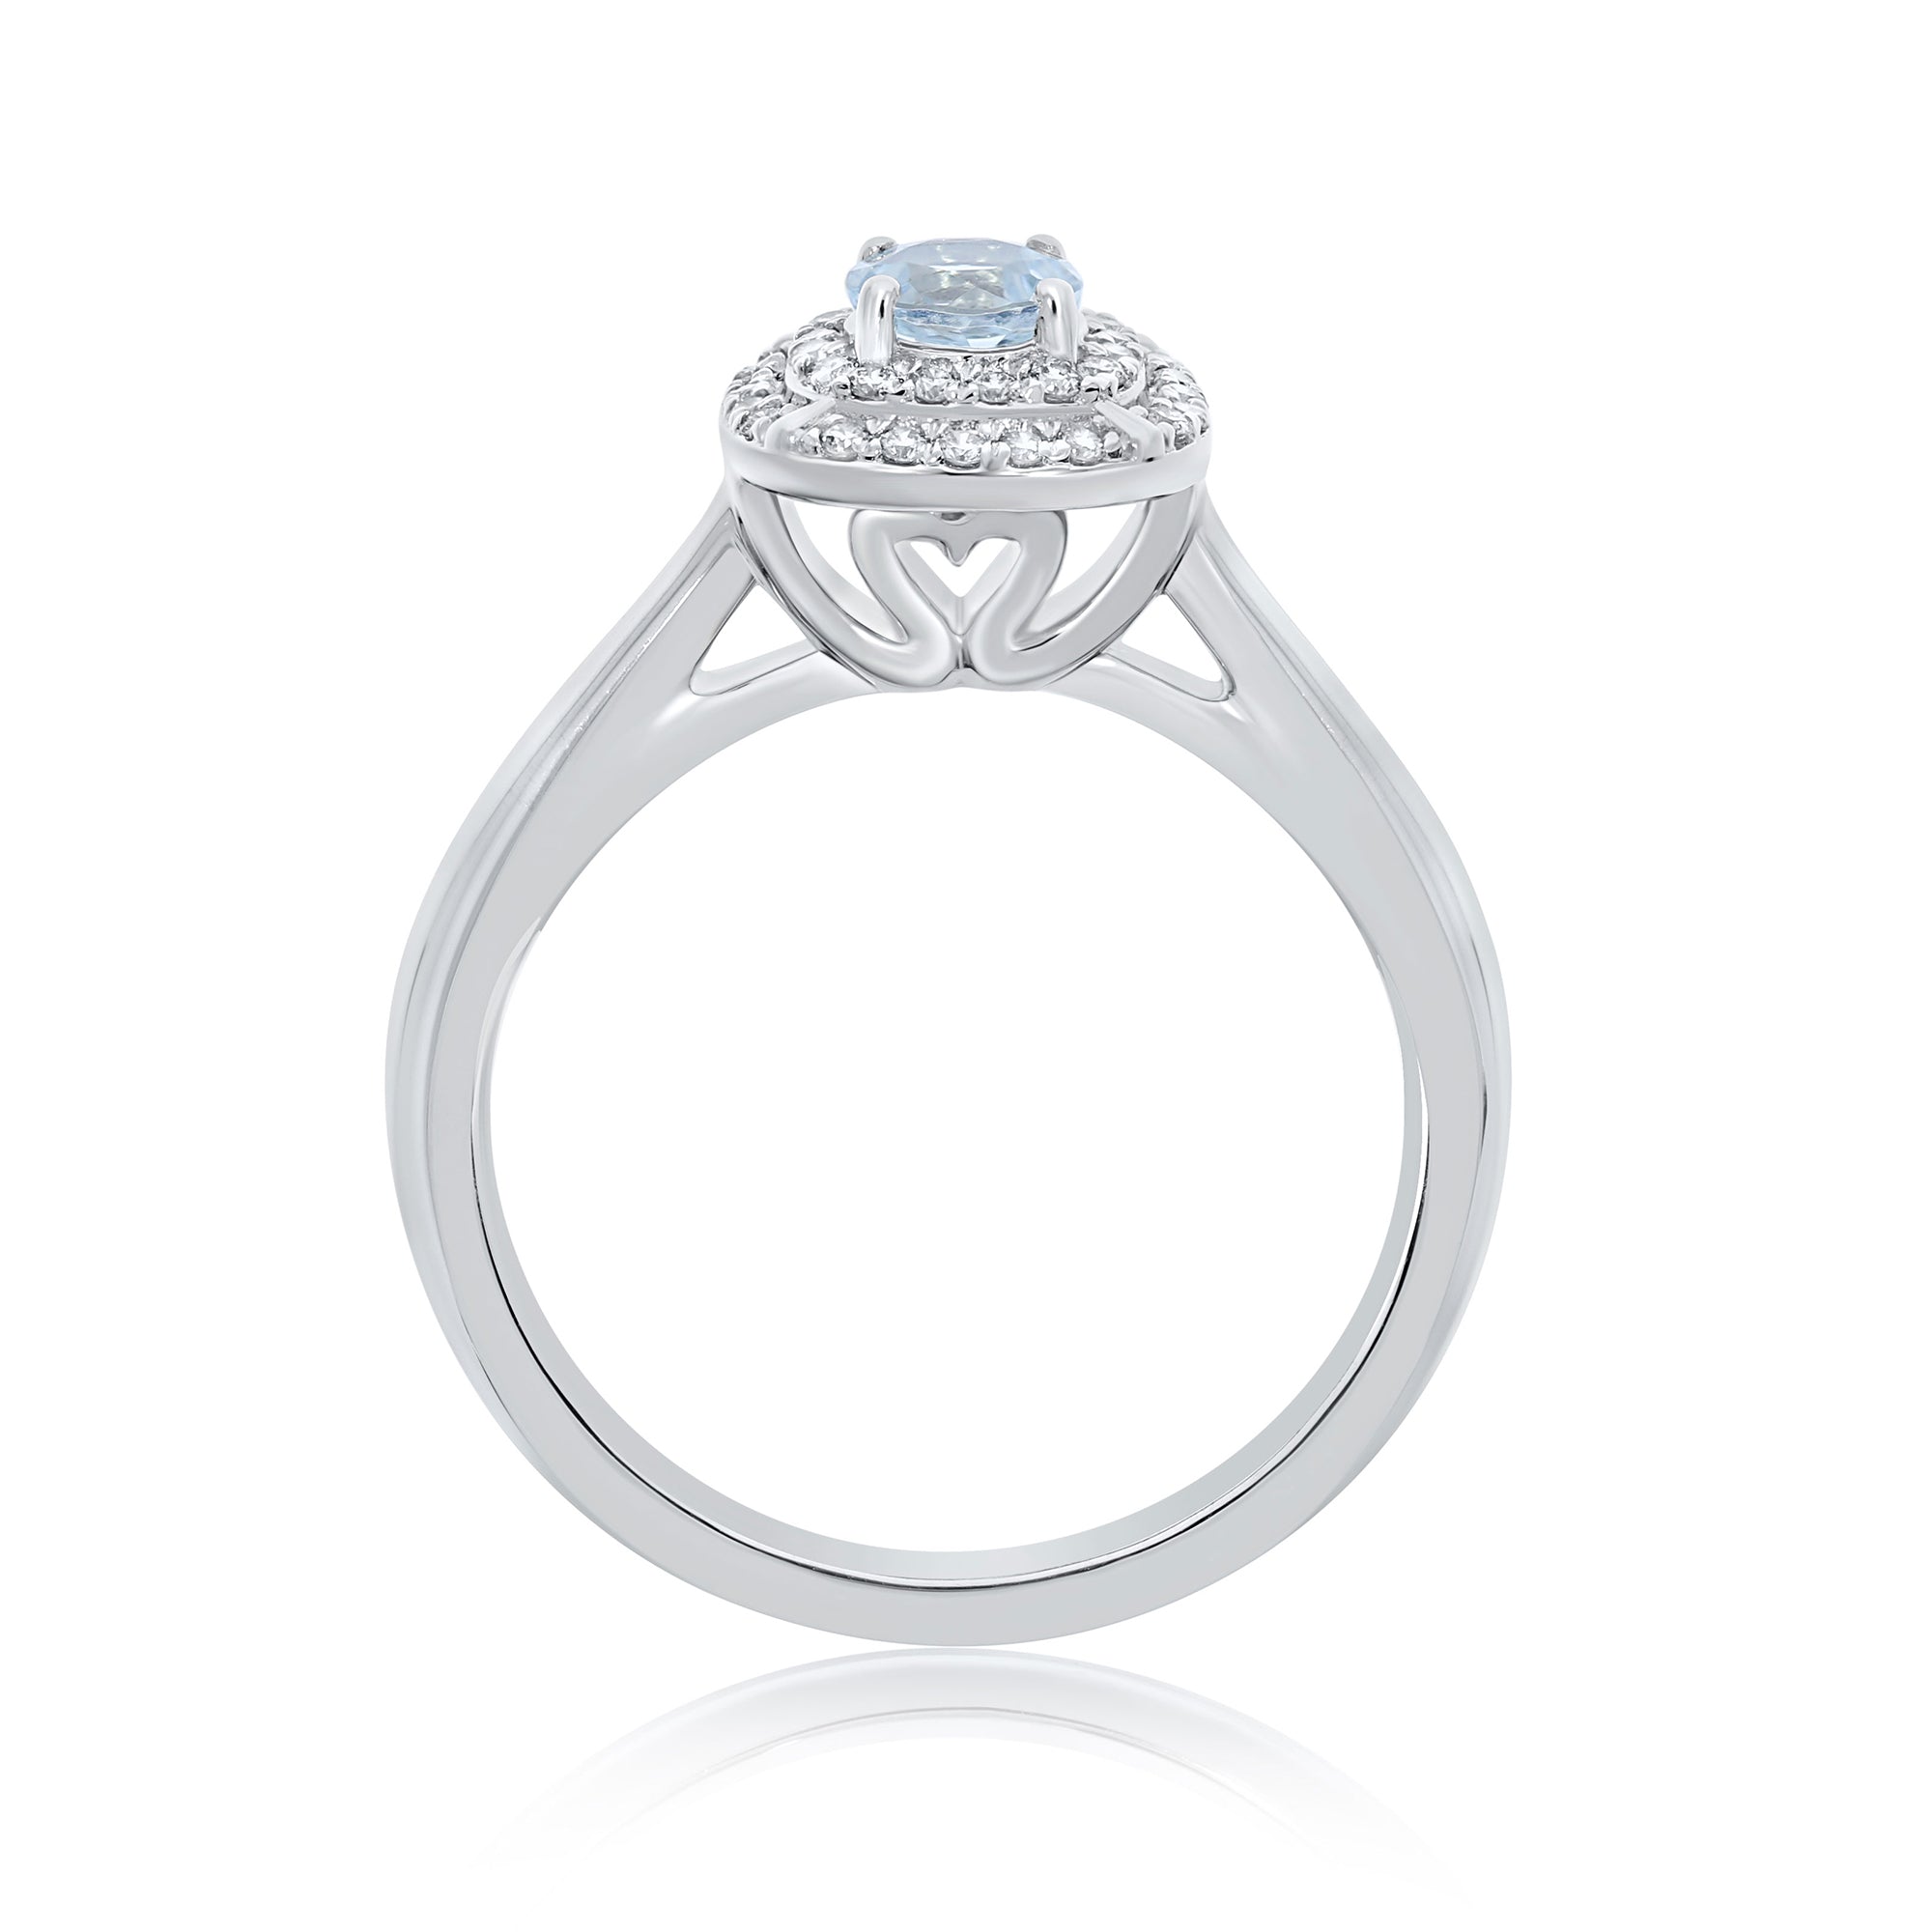 9ct white gold 4.5mm round aquamarine & diamond cluster ring 0.14ct